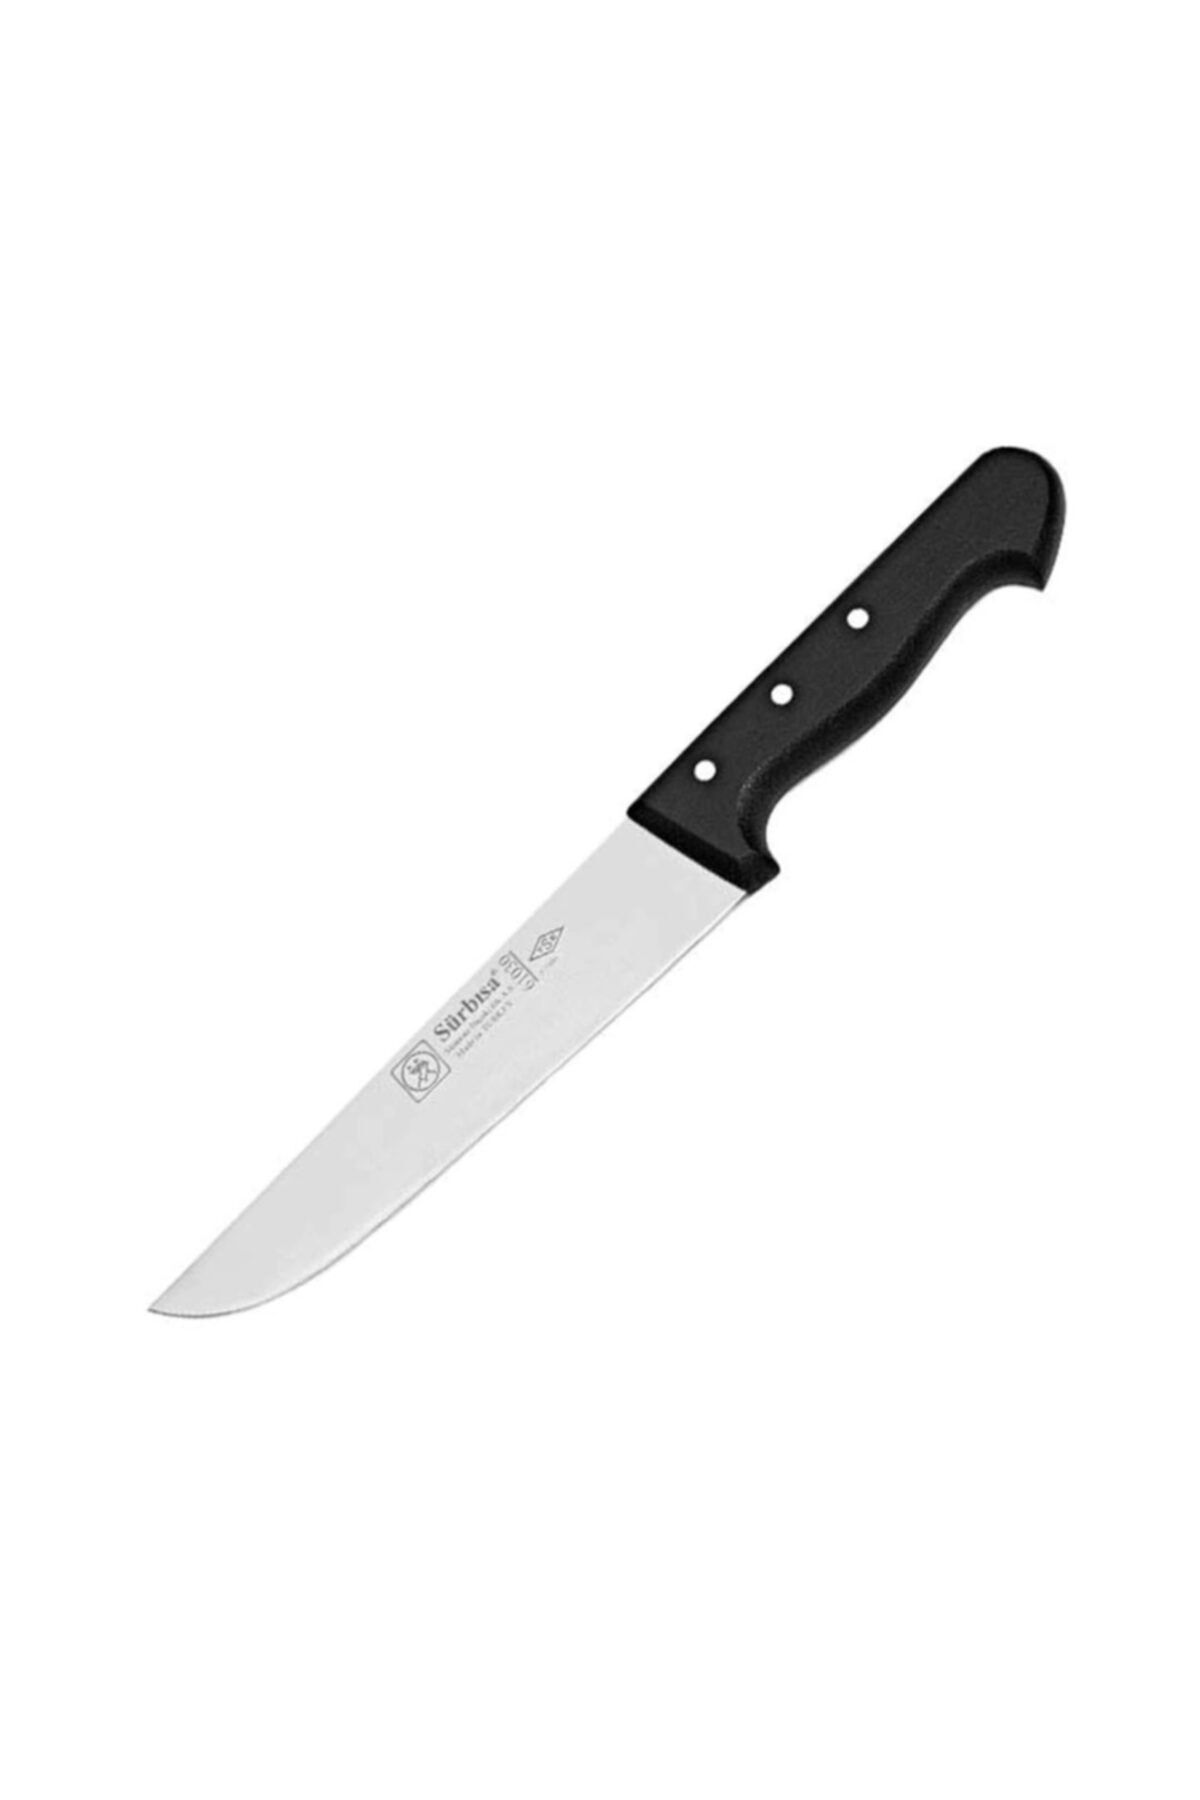 Sürbisa Kasap Bıçağı 61050